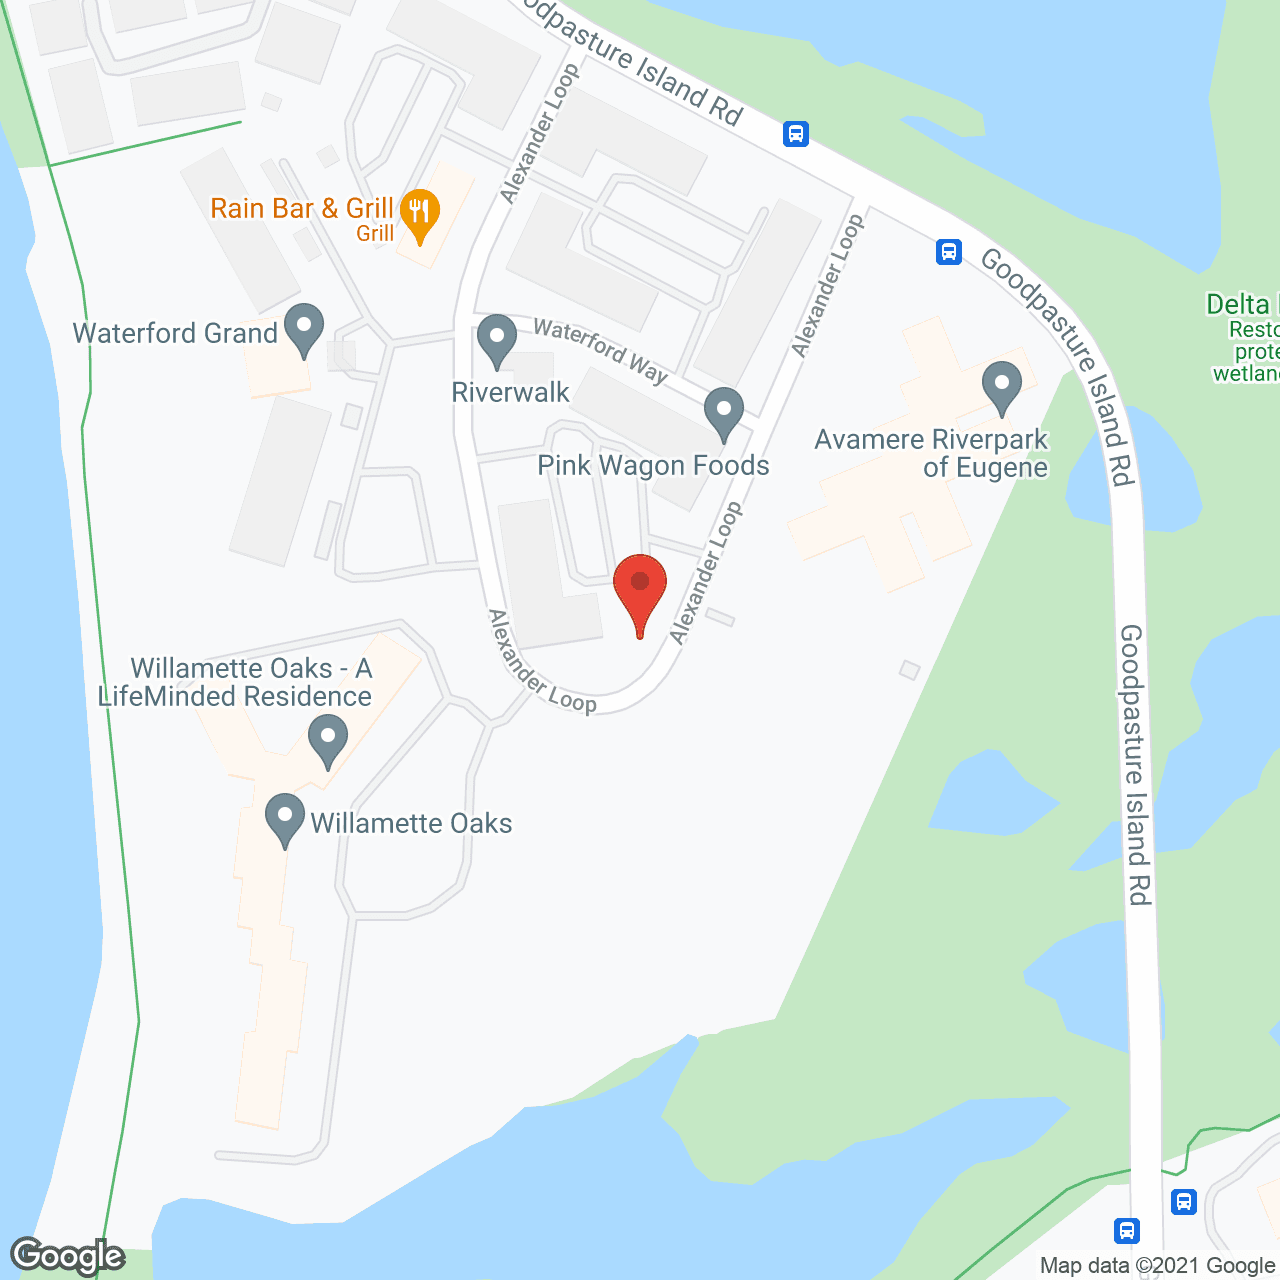 Willamette Oaks in google map